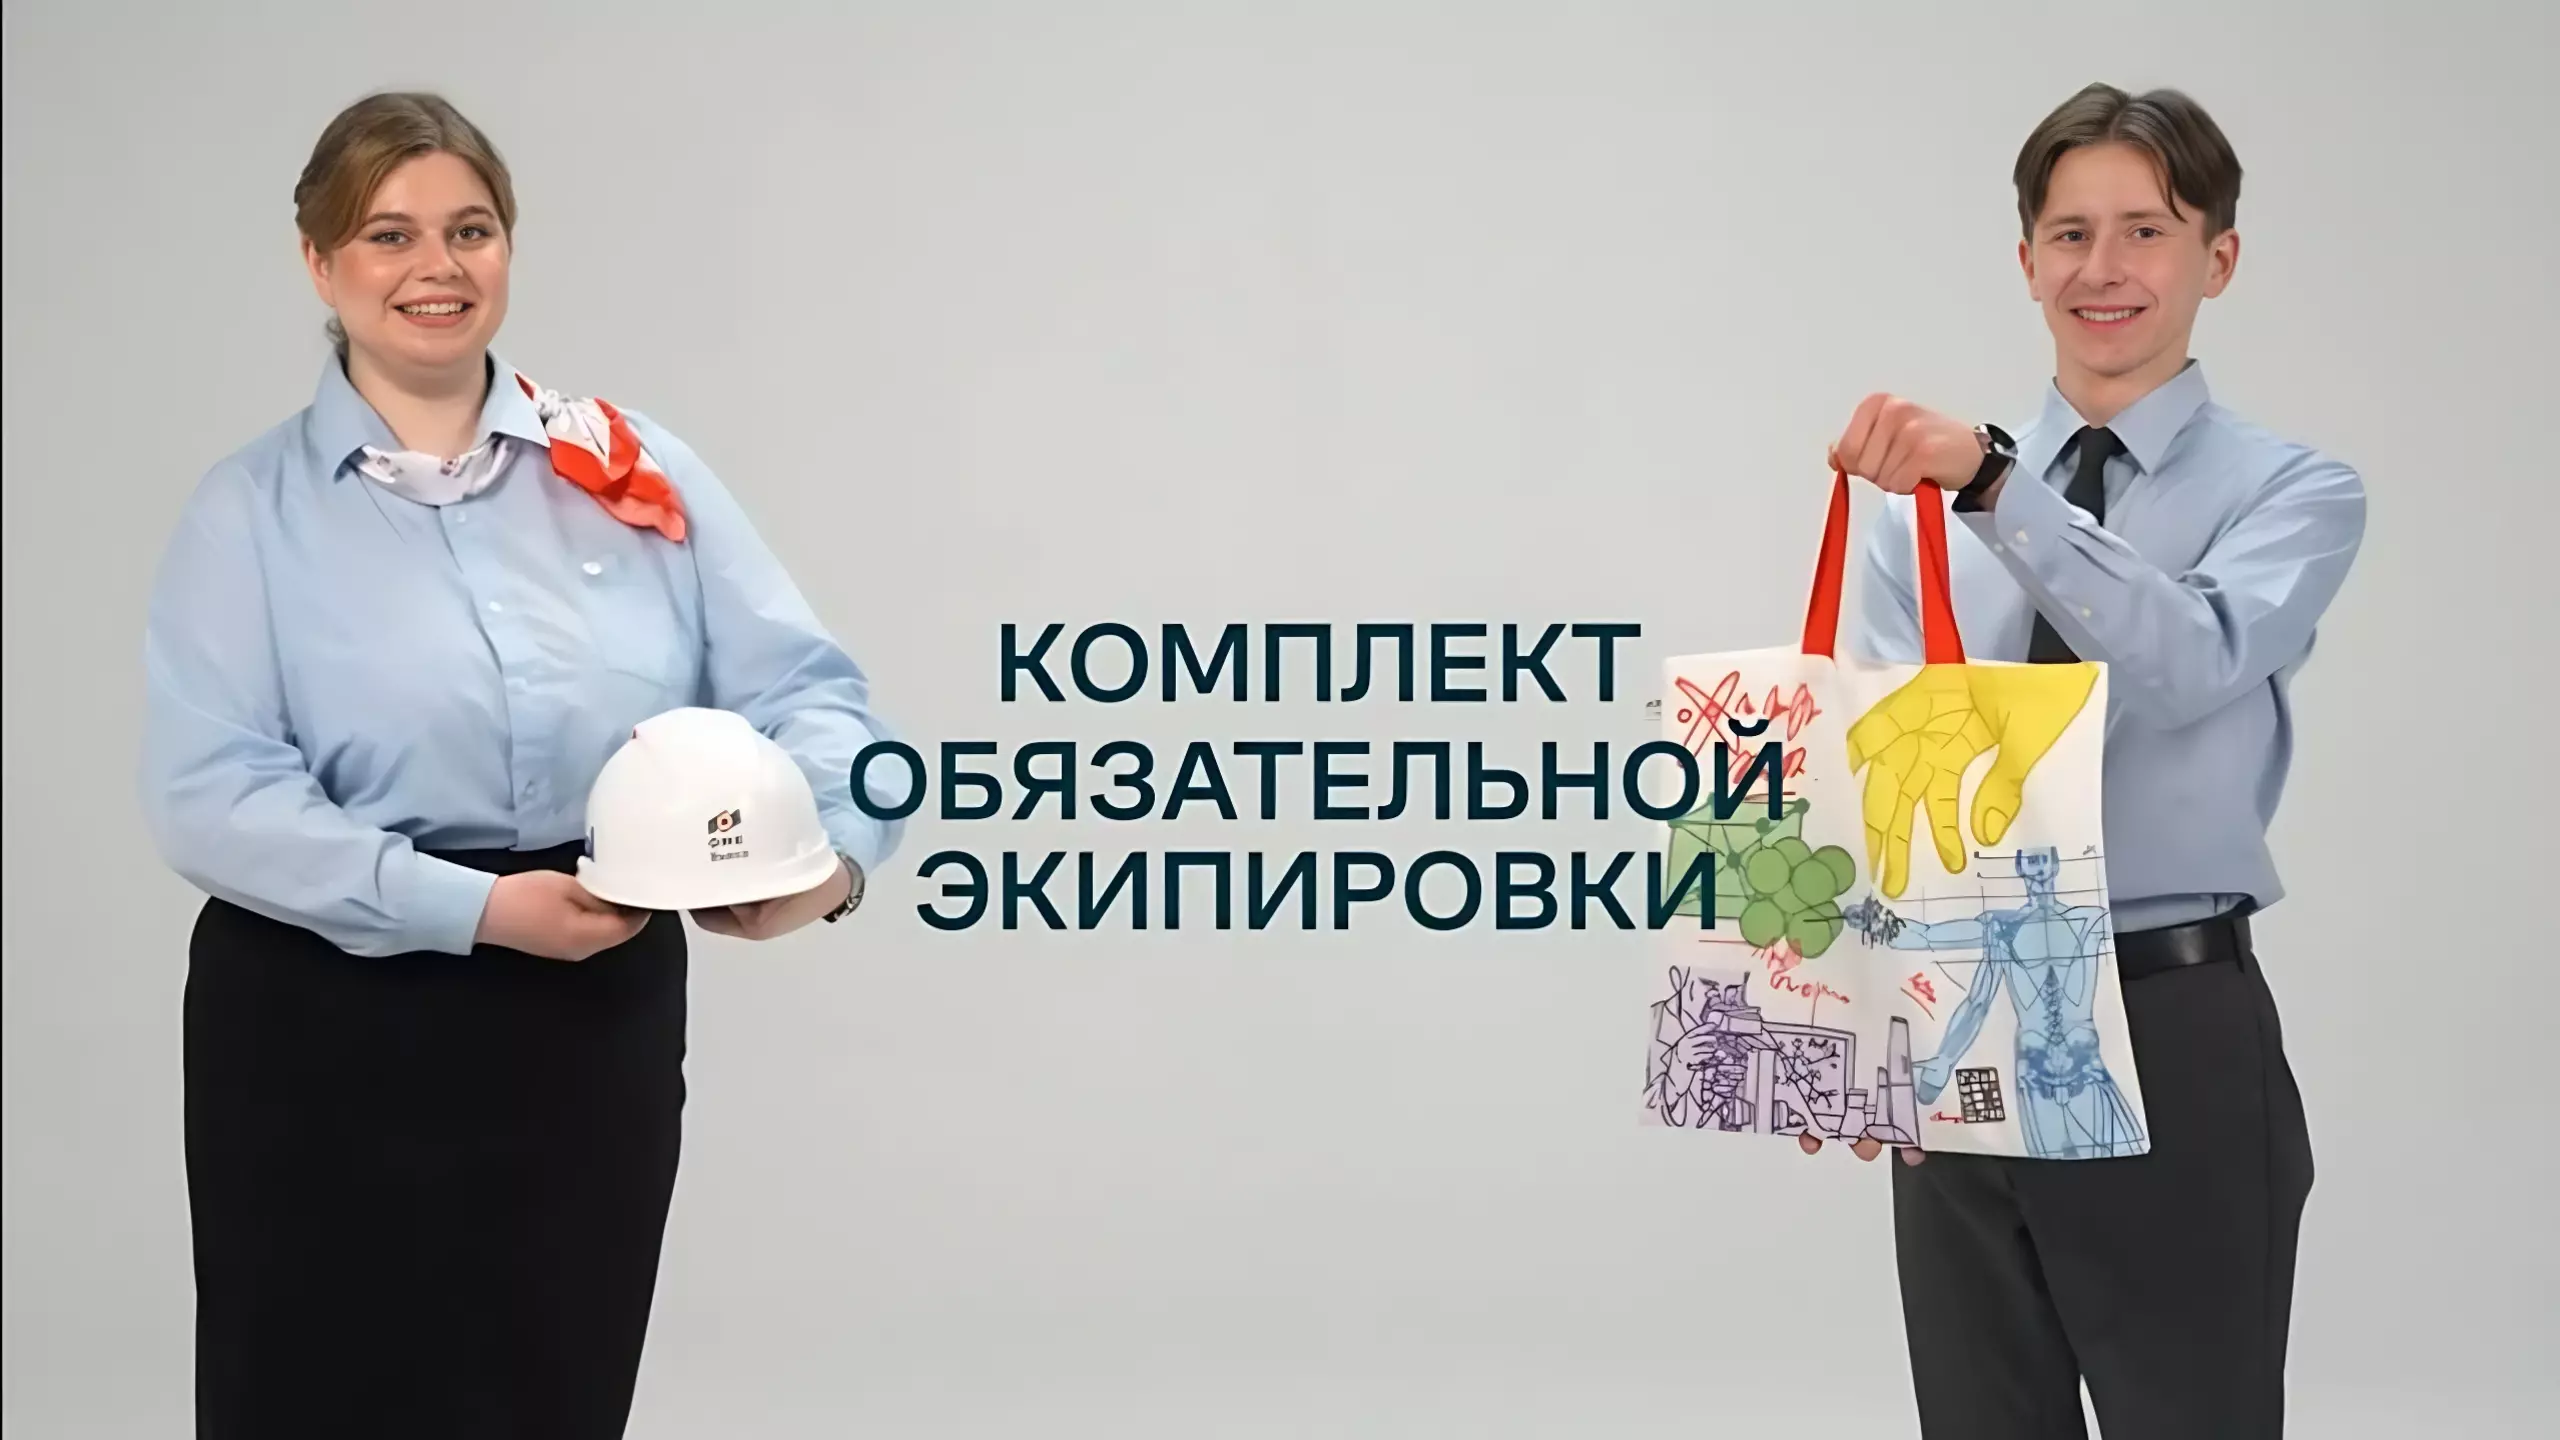 Ролики ОМК для промтуристов и будущих сотрудников победили на всероссийском конкурсе